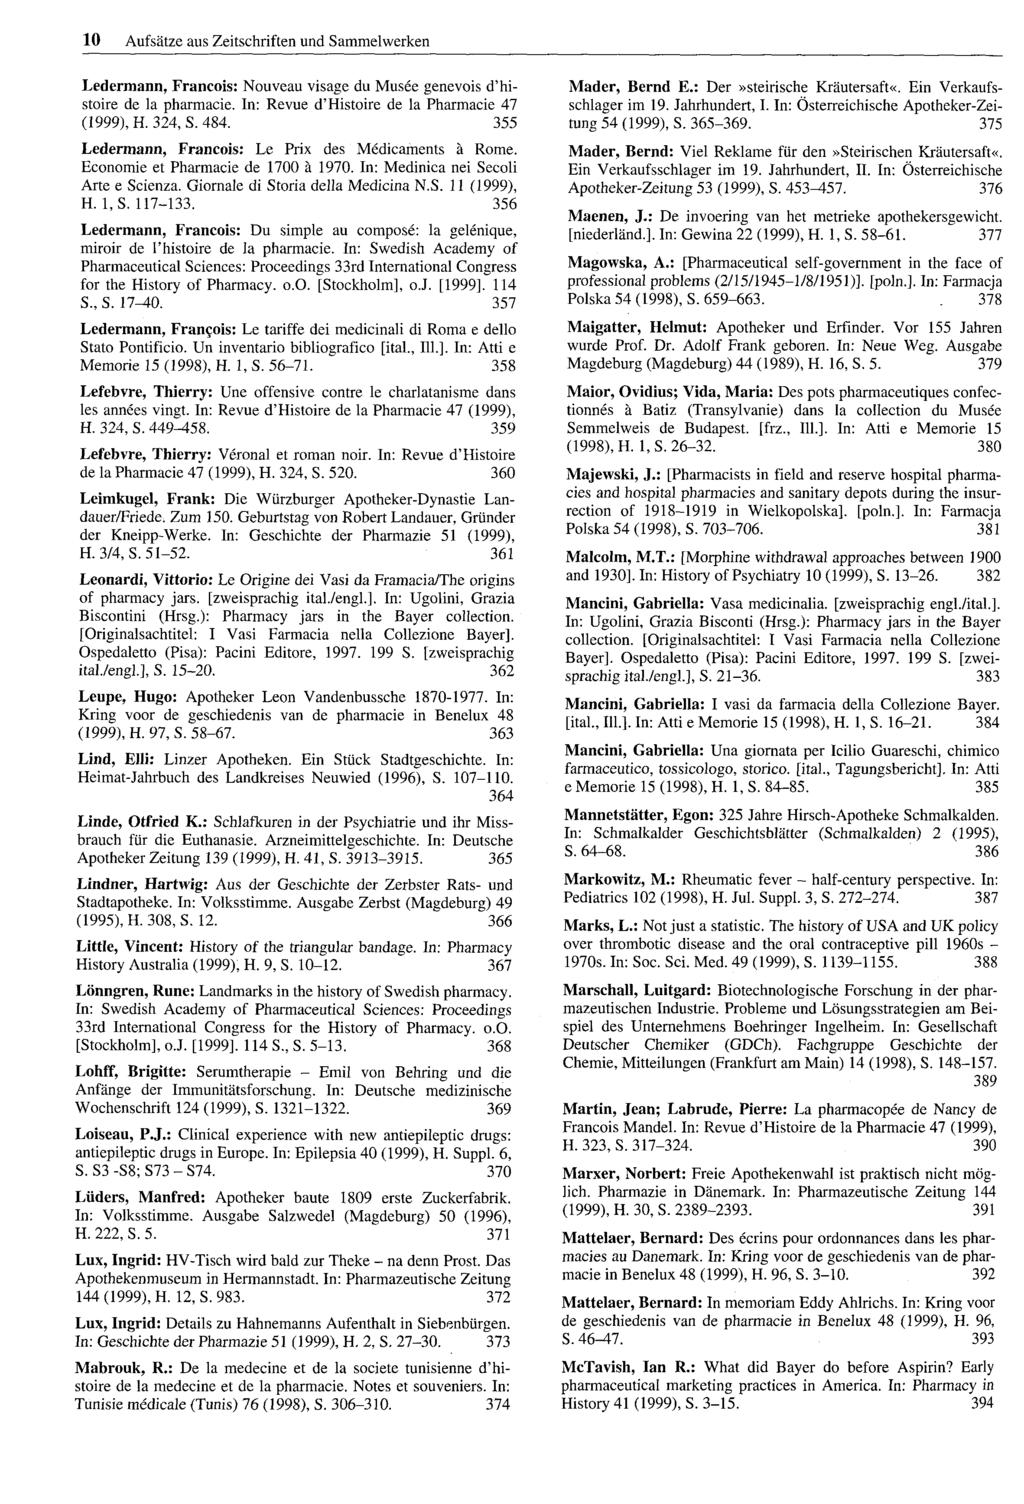 10 Aufsätze aus Zeitschriften und Sammelwerken Ledermann, Francois: Nouveau visage du Musee genevois d'histoire de la pharmacie. In: Revue d'histoire de la Pharmacie 47 (1999), H. 324, S. 484.